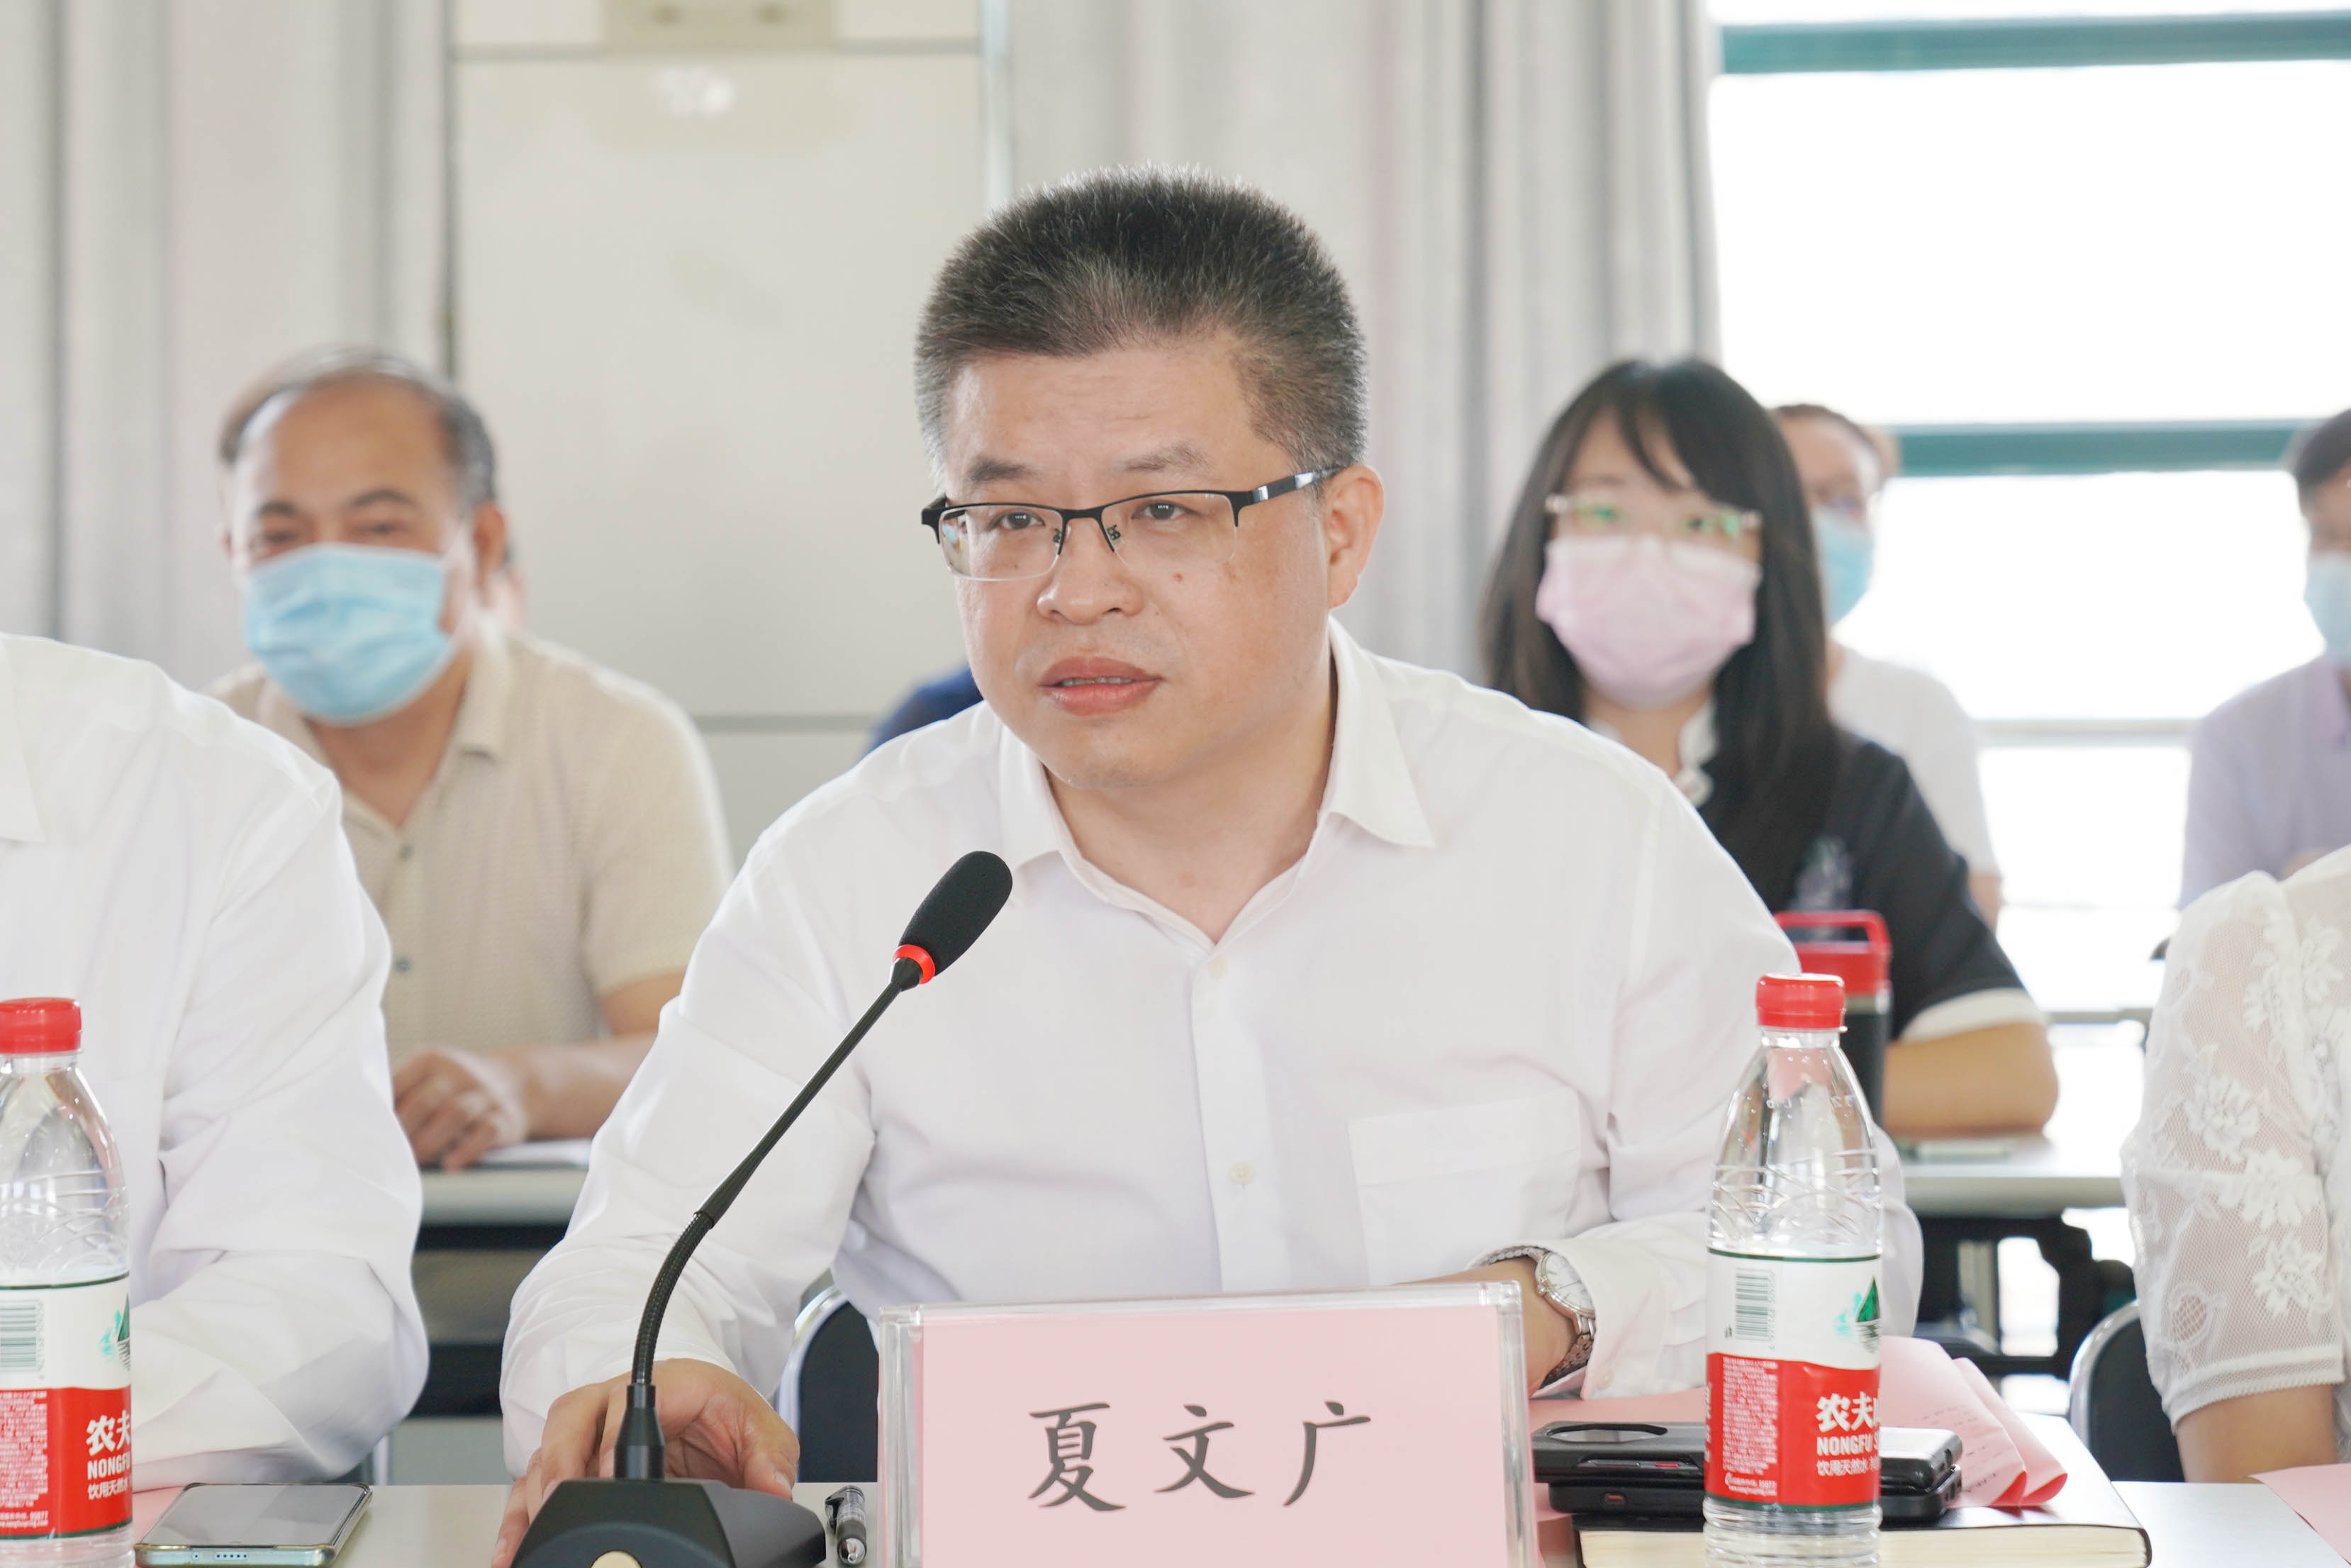 湖北省人民医院与湖北省直属机关医院签约成立 6 大专科联盟